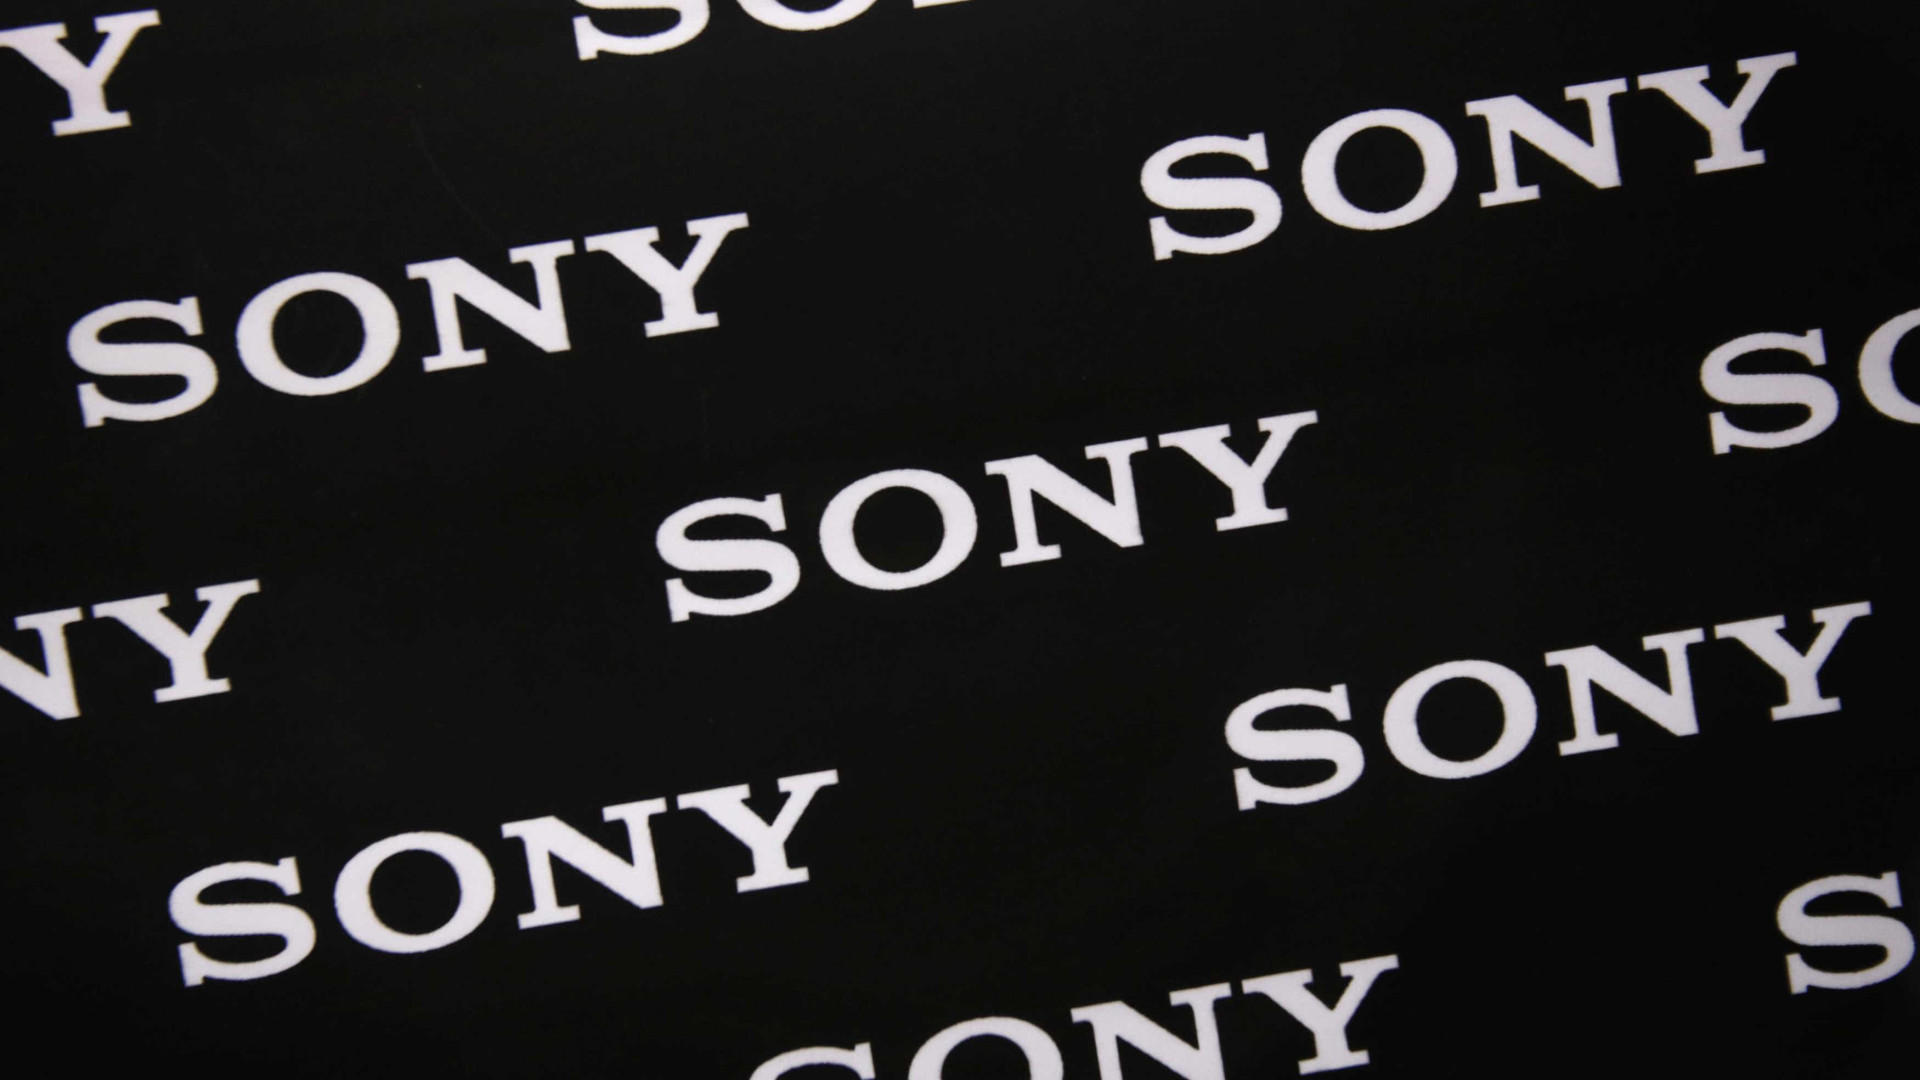 Táxis inteligentes: conheça o próximo projeto da Sony